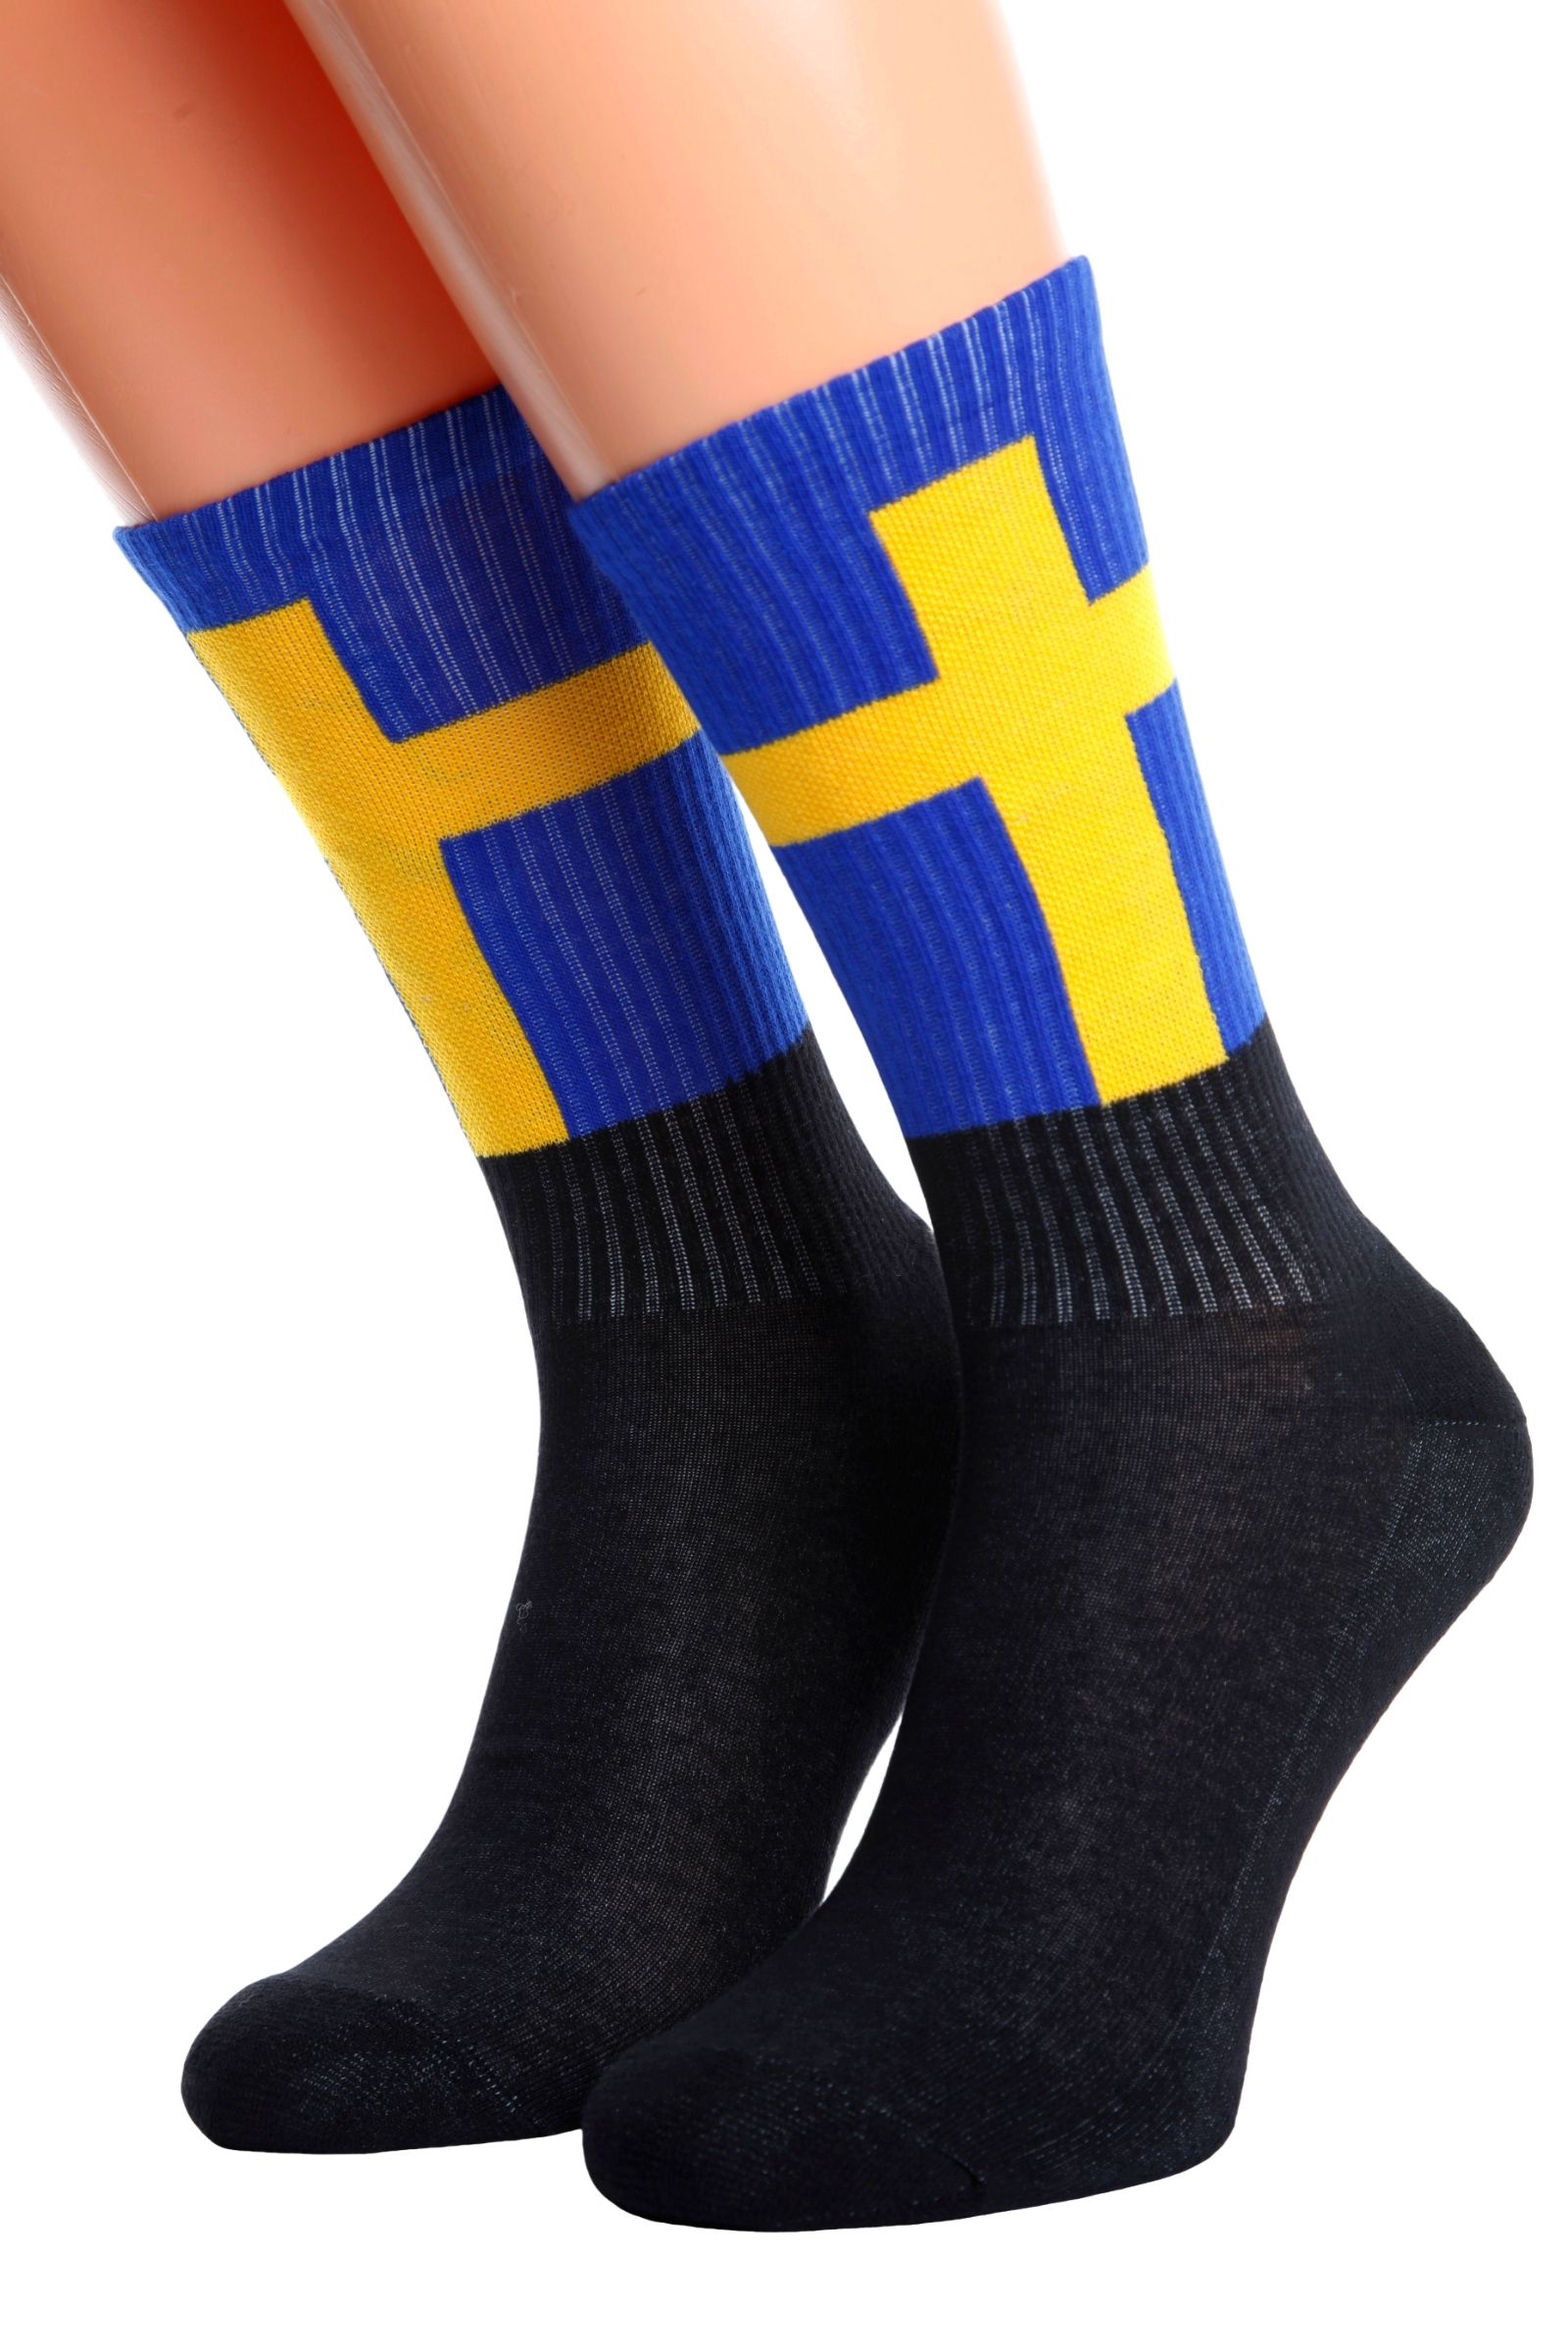 Best For Running Flag Of Sweden Long Socks For Women 2 Pairs Womens Knee High Socks